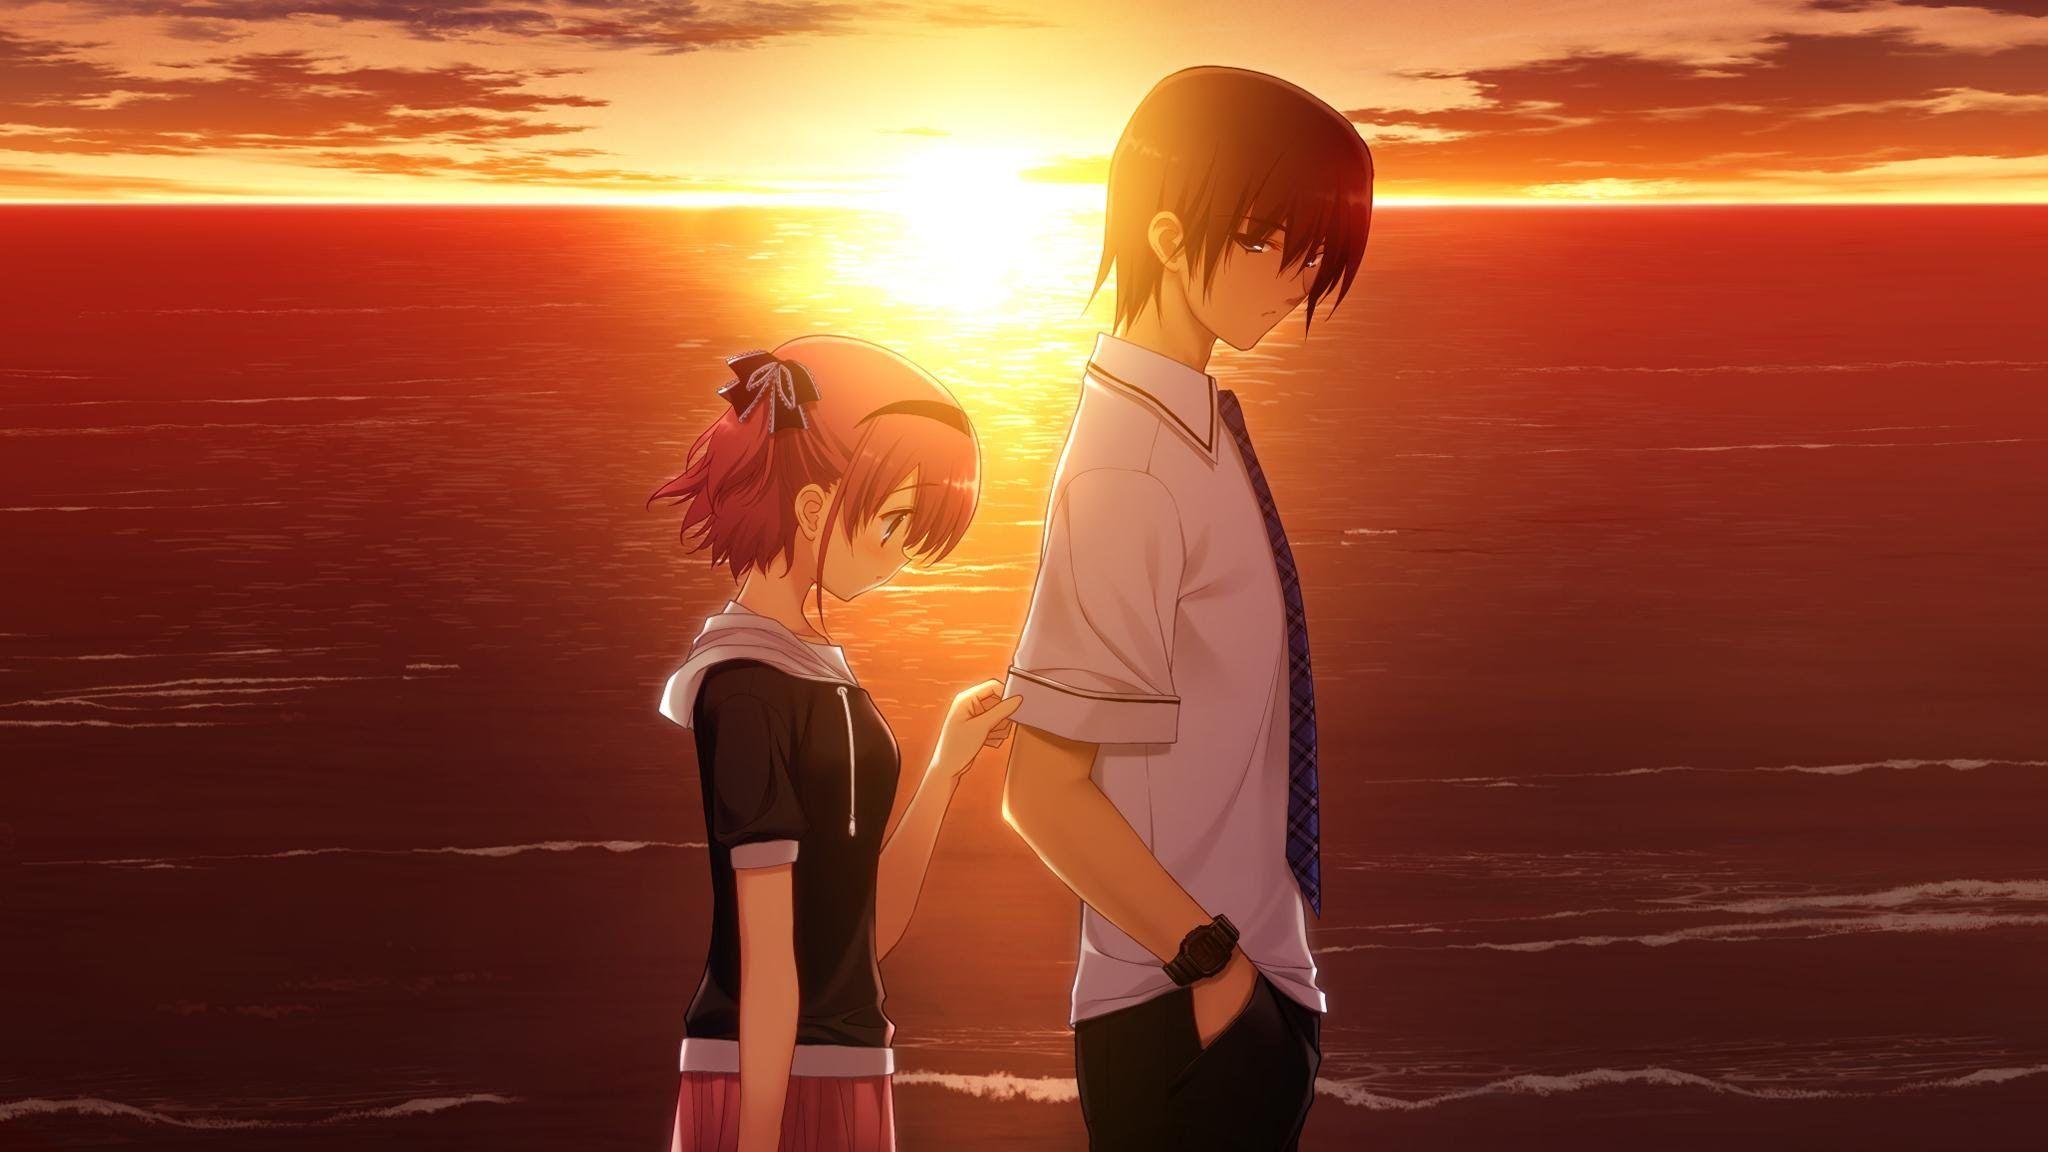 Sad Anime Couple Sunset Image